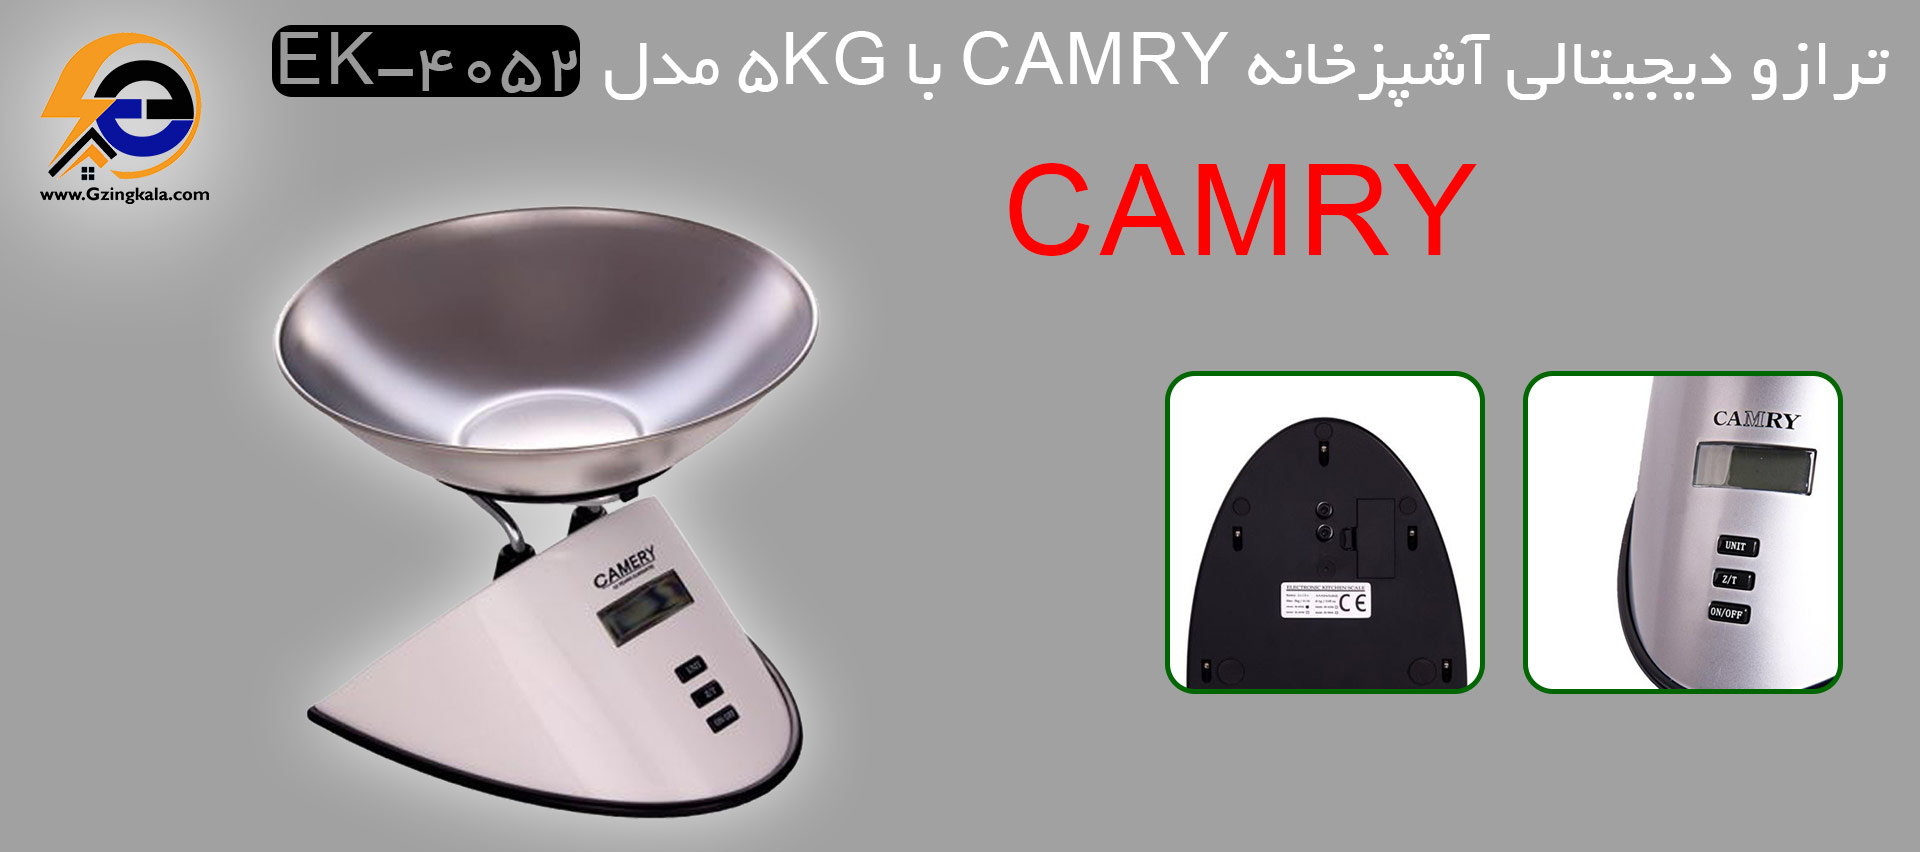 ترازو دیجیتالی آشپزخانه camry با 5kg مدل ek-4052